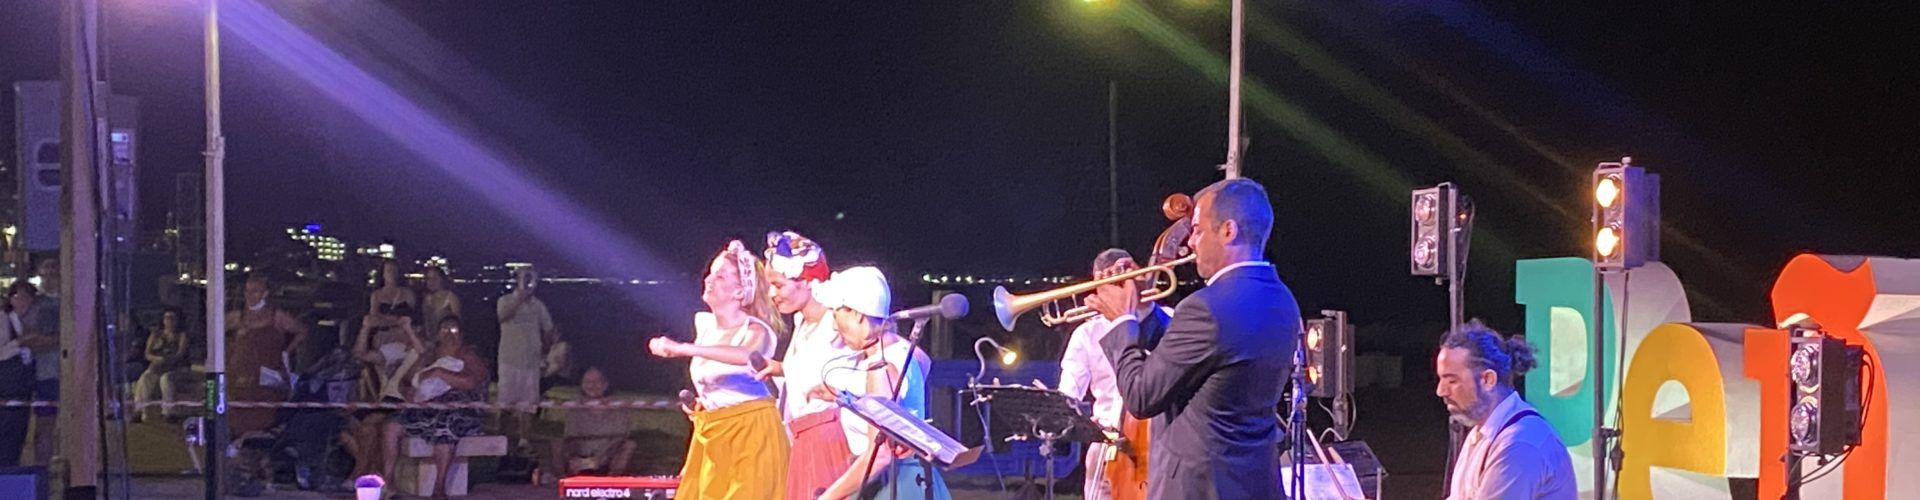 Més de 2.000 espectadors gaudeixen a Peníscola del Street Jazz Weekend en la seua edició inaugural